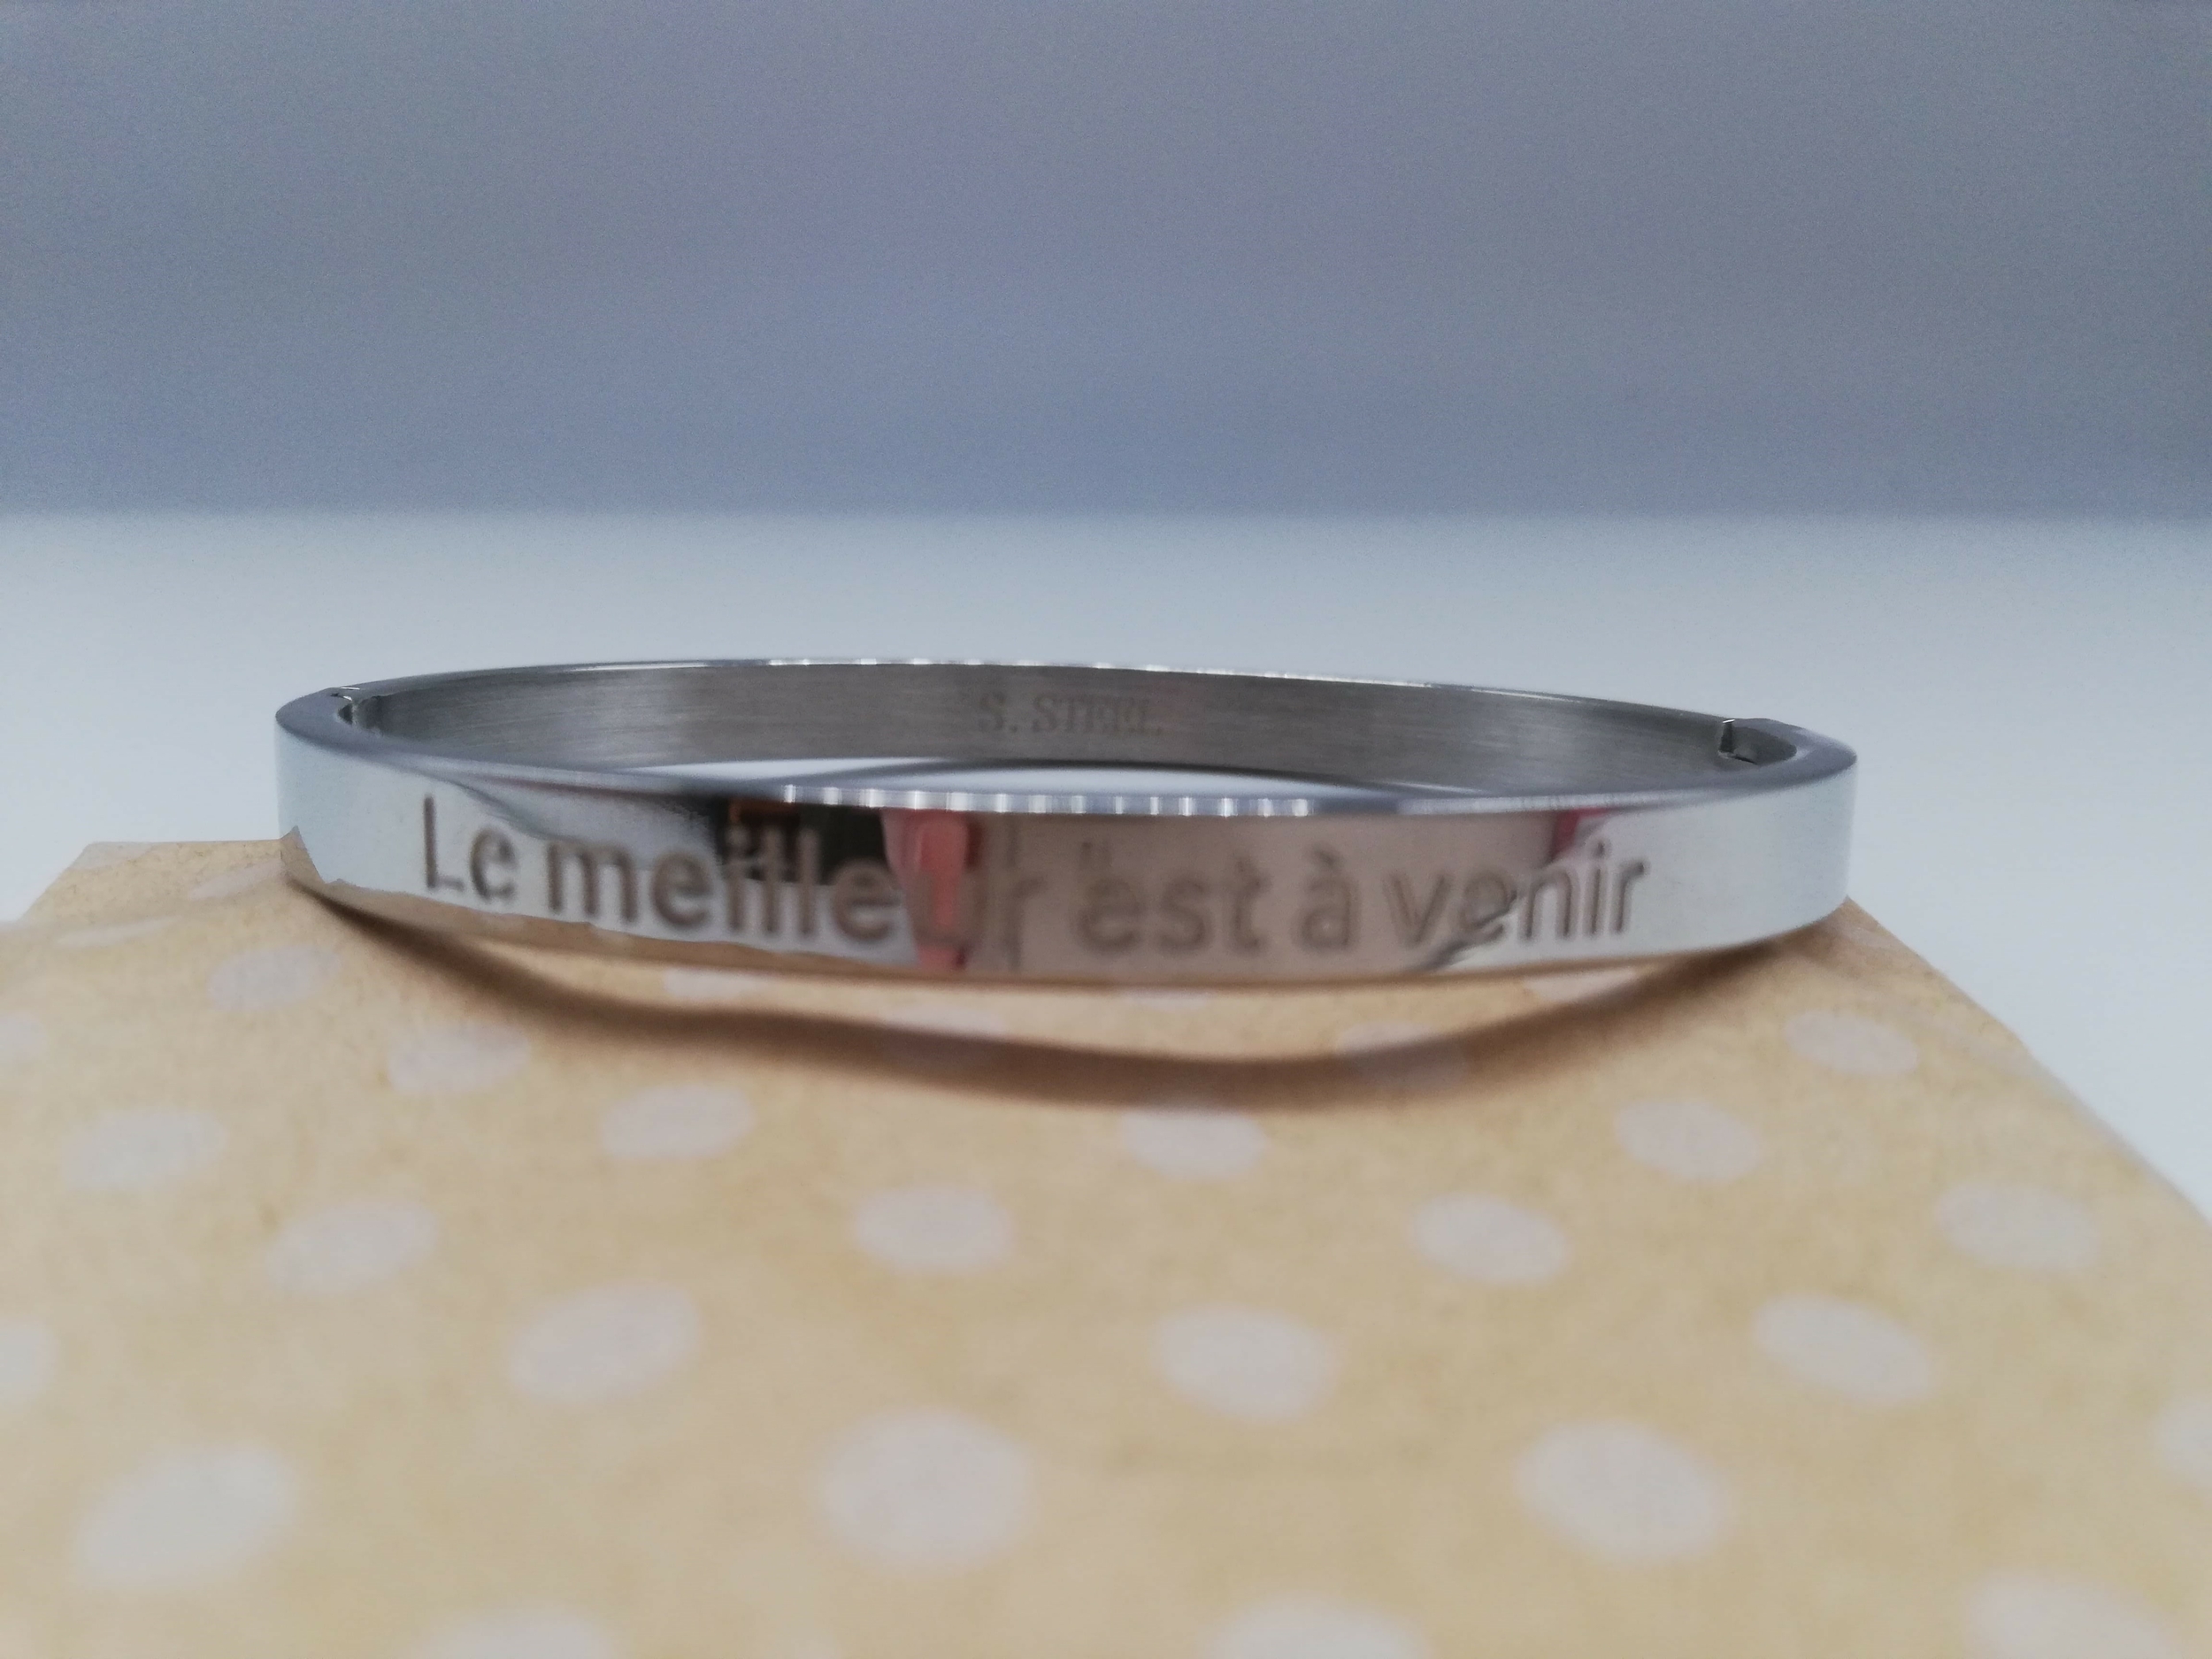 Cadeau pour encourager quelqu\'un bracelet personnalisé Le meilleur est à venir